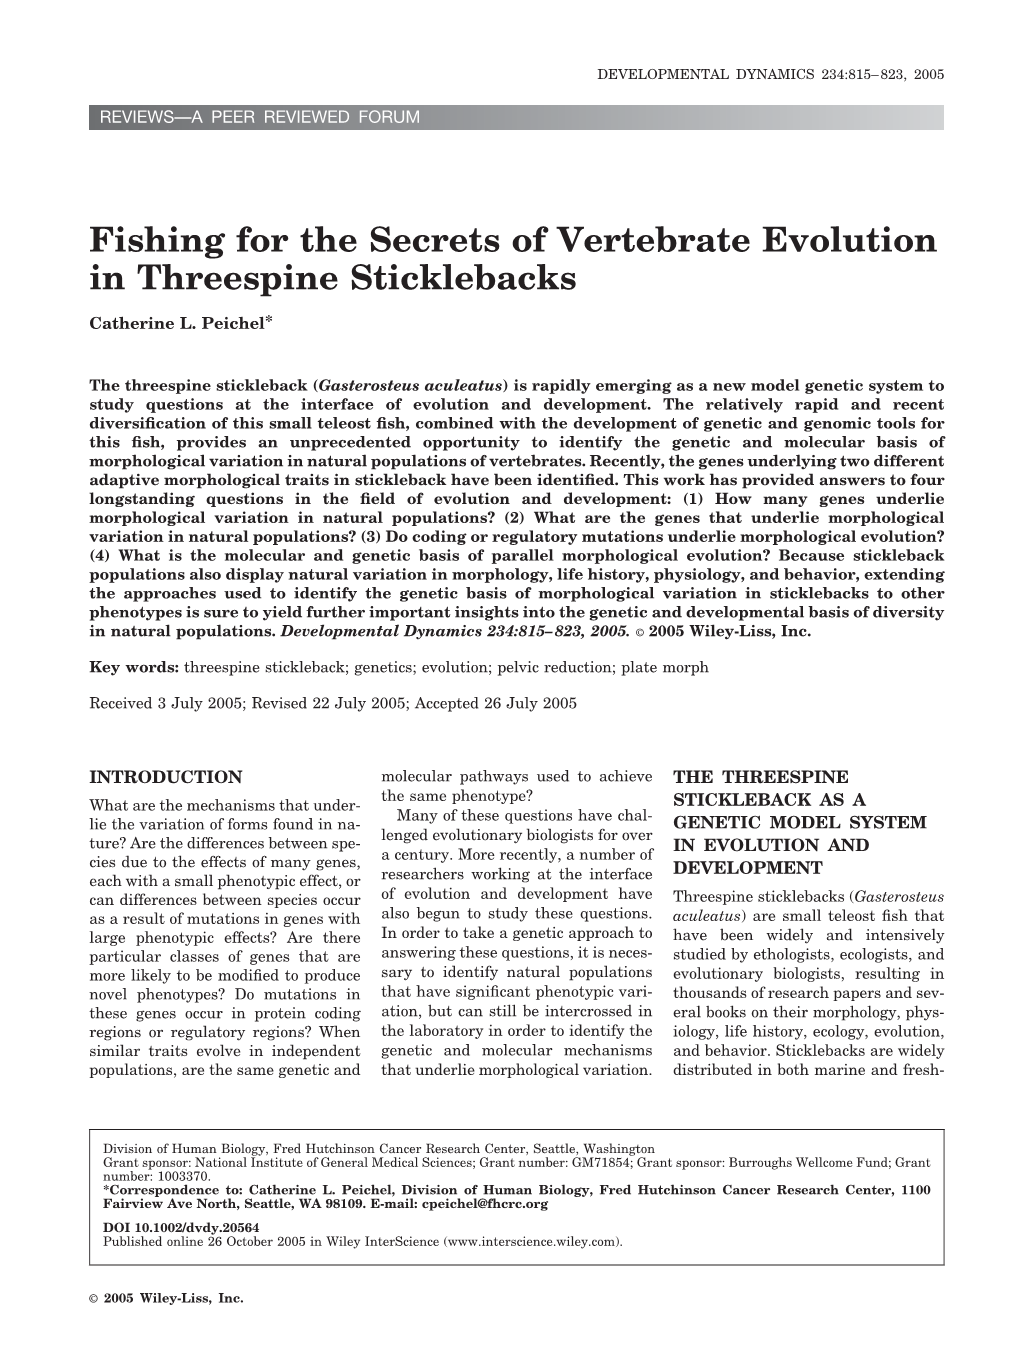 Fishing for the Secrets of Vertebrate Evolution in Threespine Sticklebacks